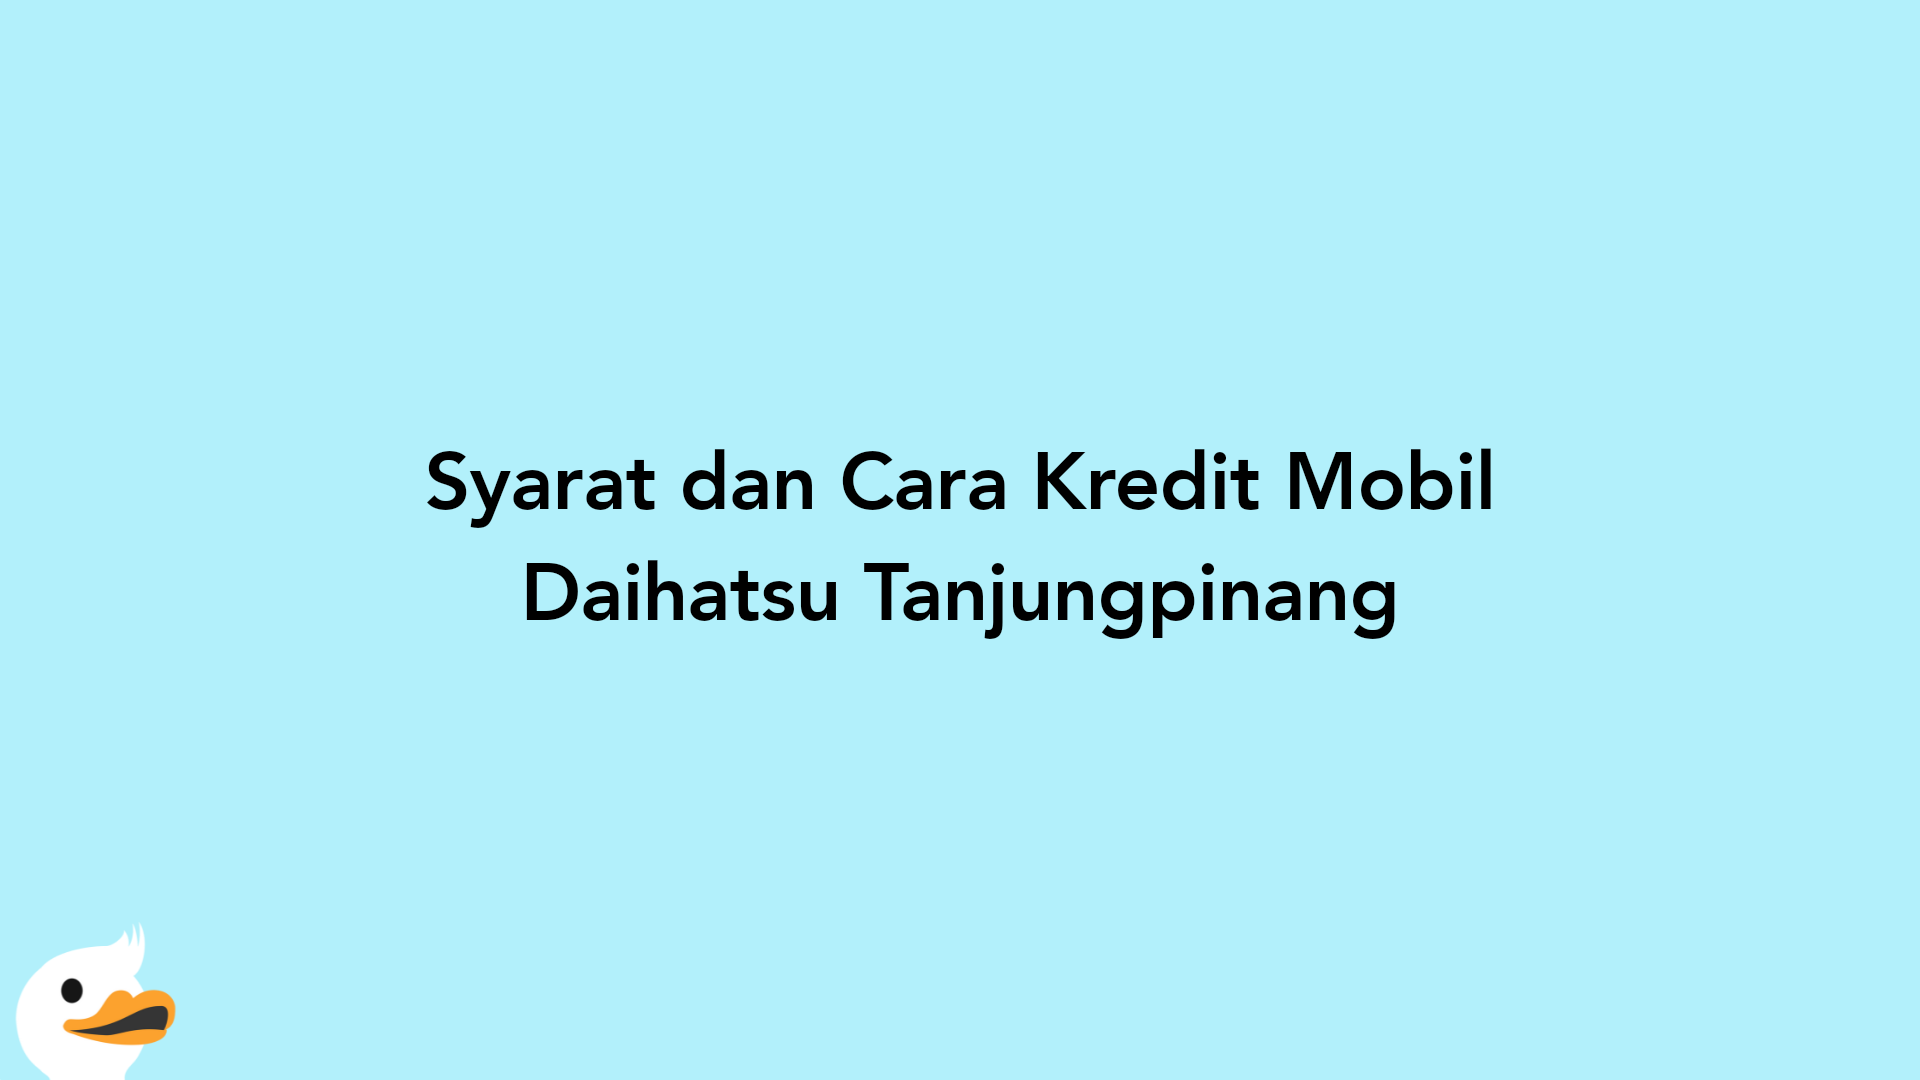 Syarat dan Cara Kredit Mobil Daihatsu Tanjungpinang